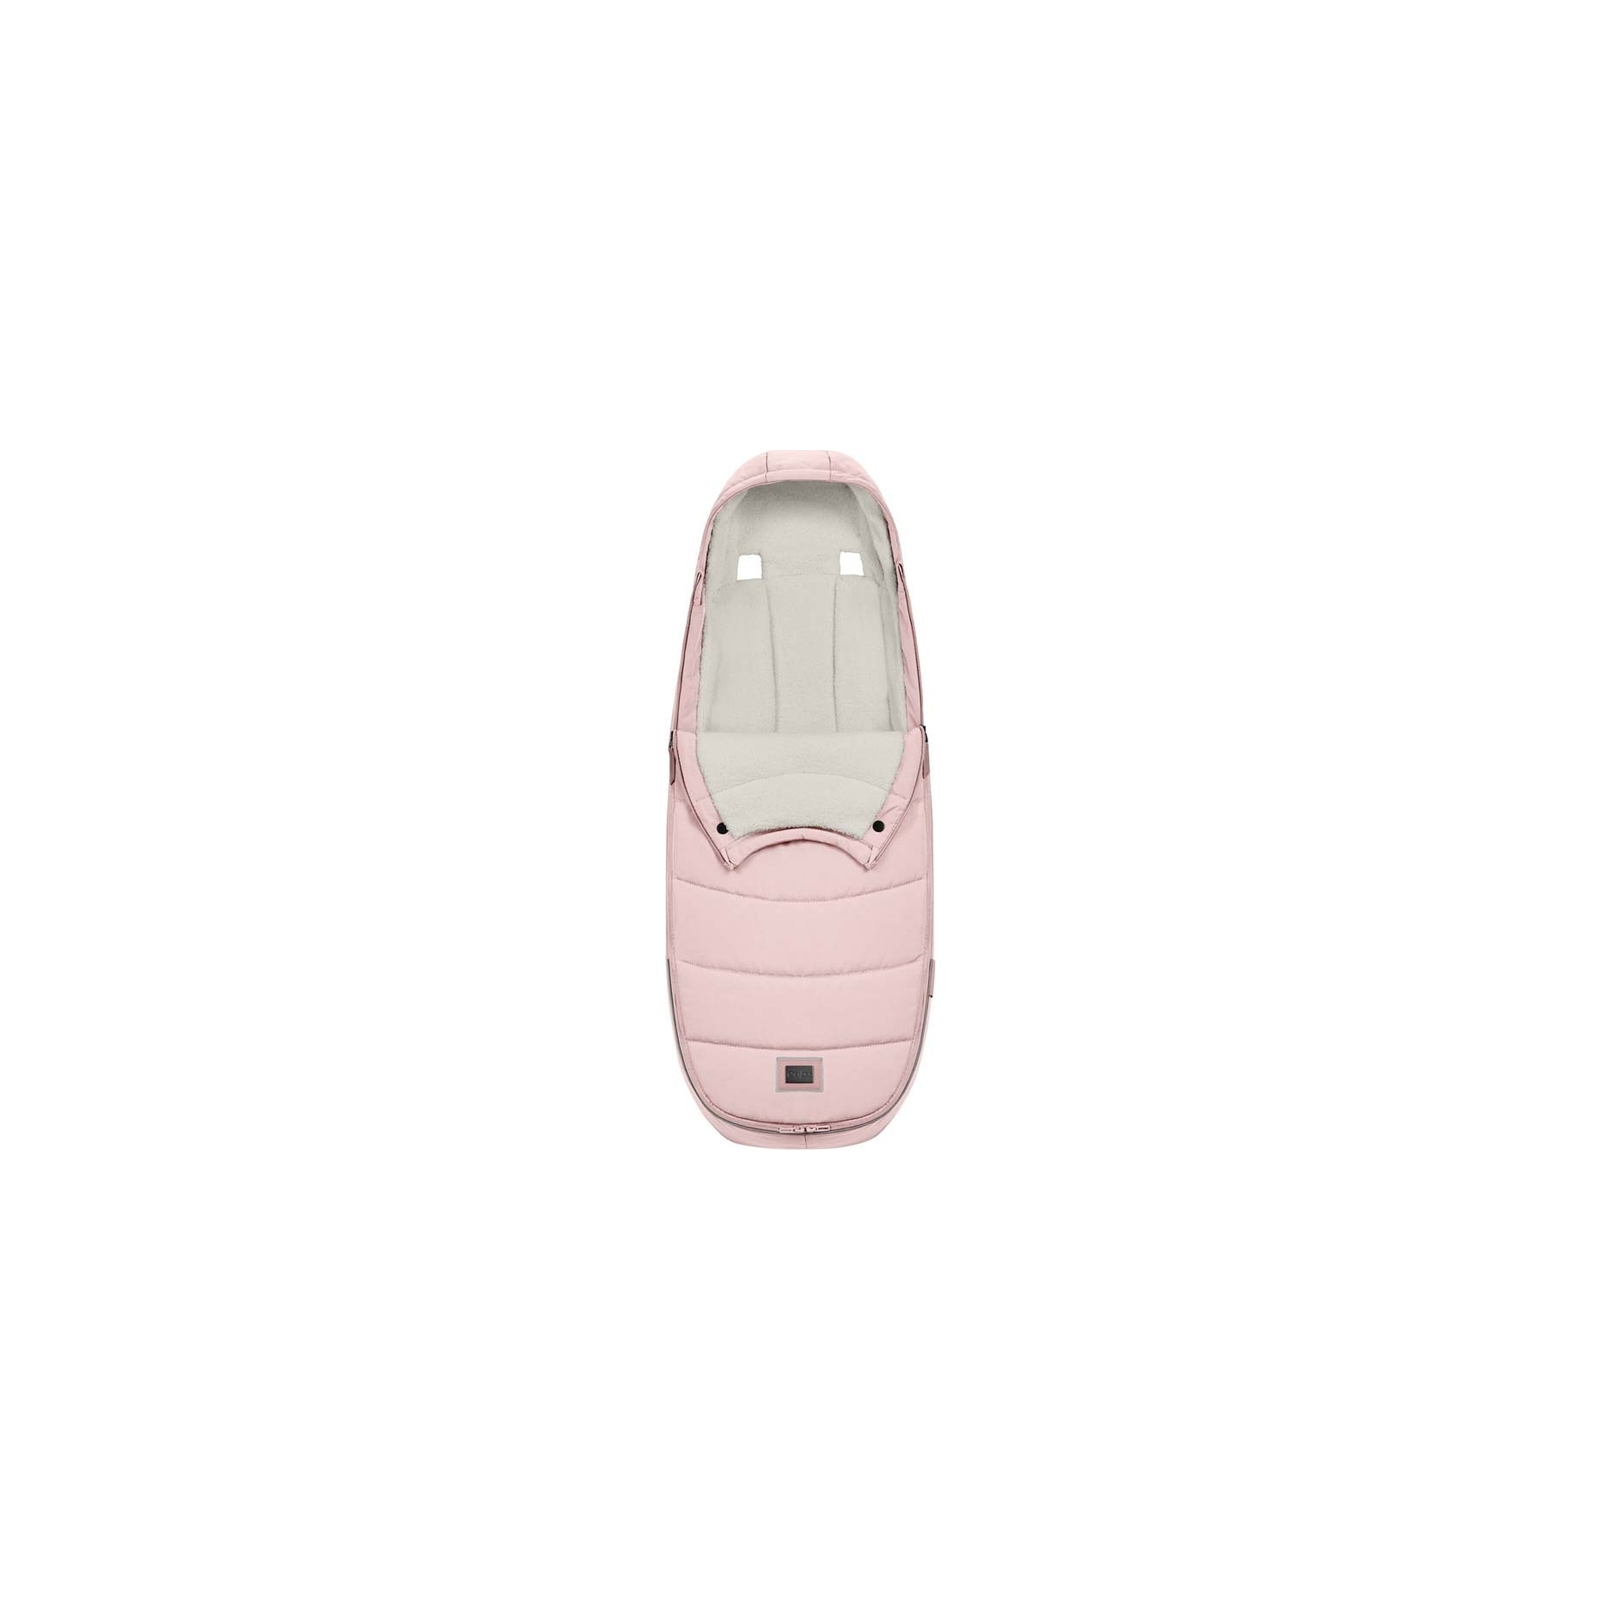 Чехол для ног Cybex Platinum Peach Pink (523000719) изображение 5